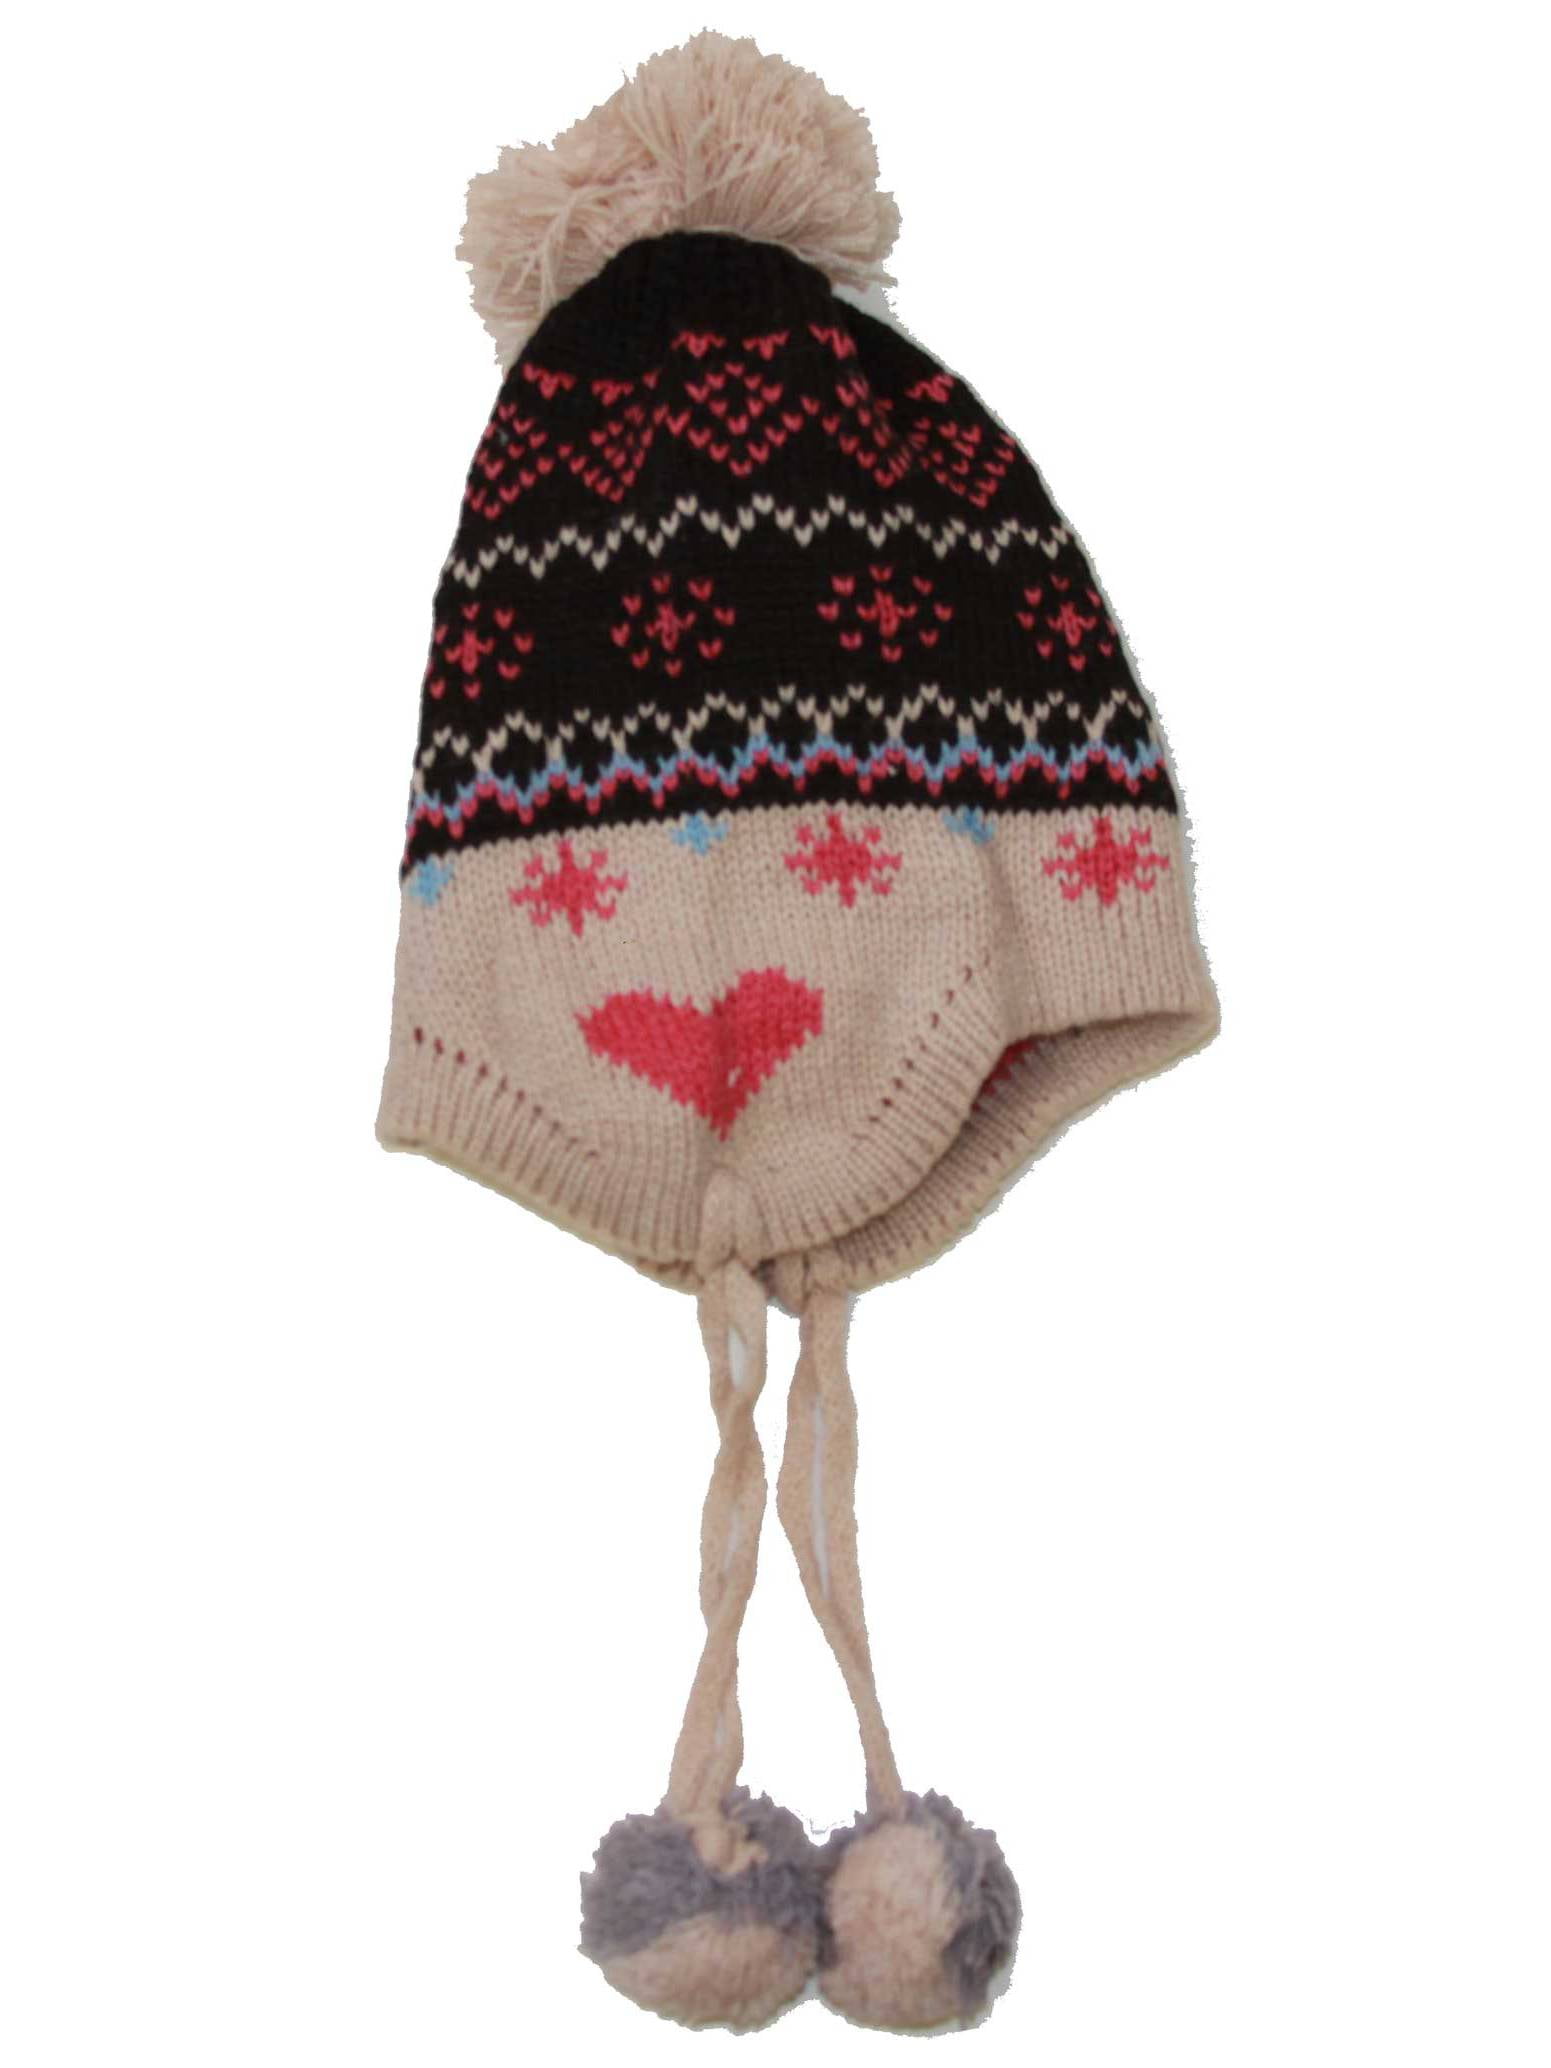 Infant Sized Knit Pom Pom Heart Beanie 